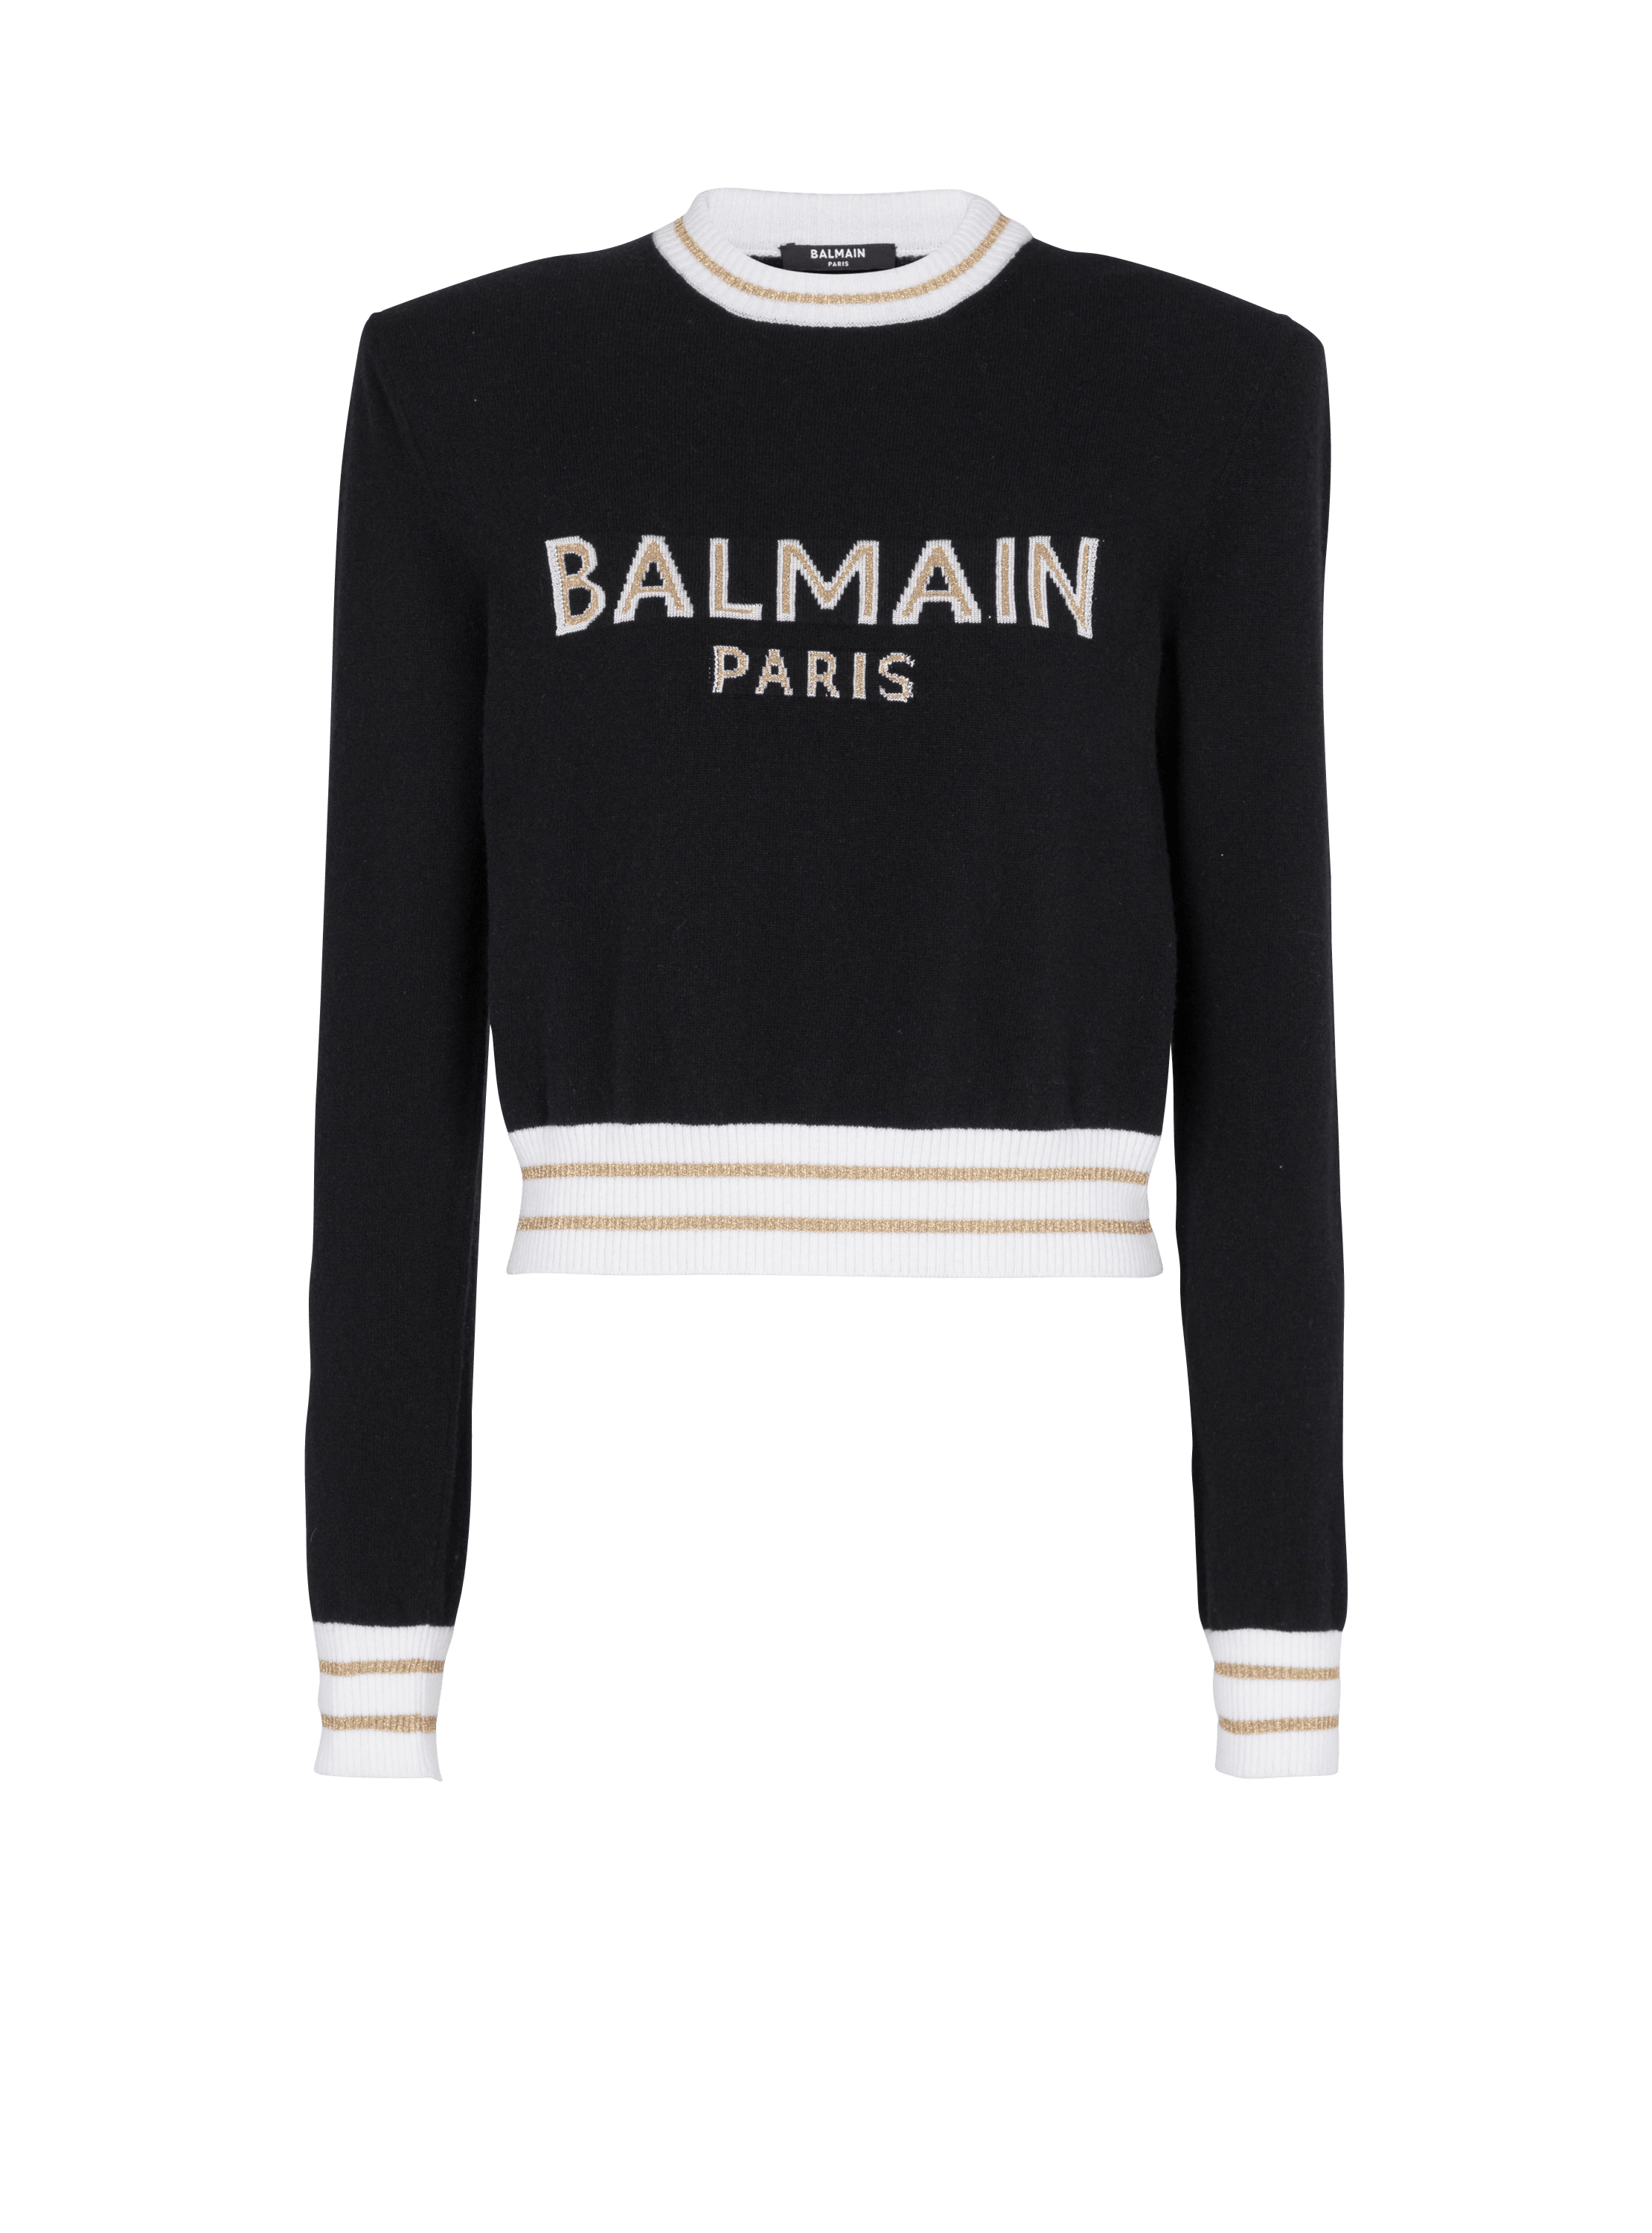 Jersey corto de lana con logotipo de Balmain, negro, hi-res